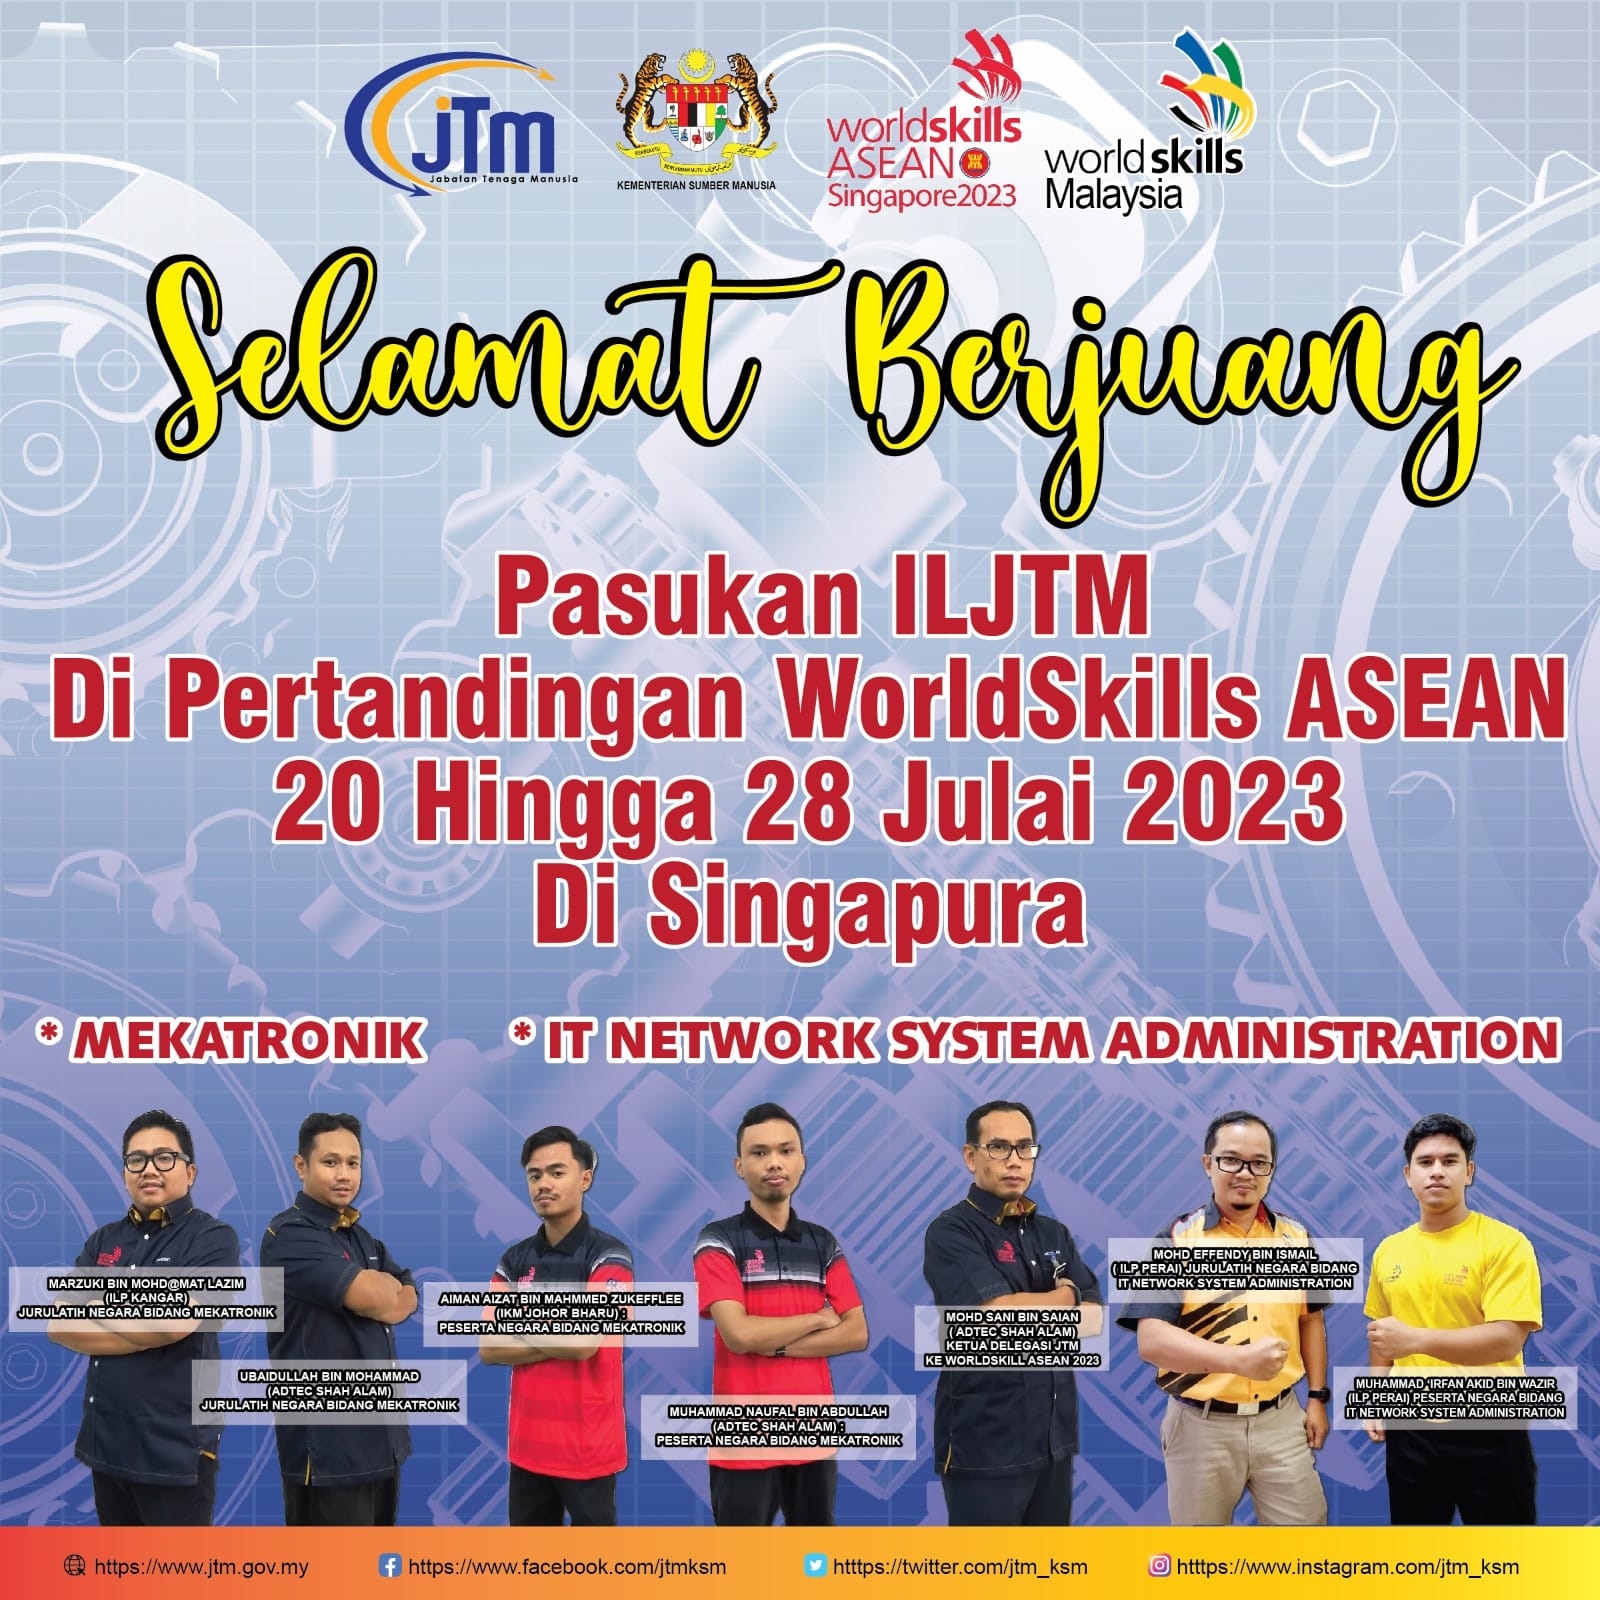 PERTANDINGAN WORLDSKILLS ASEAN 2023